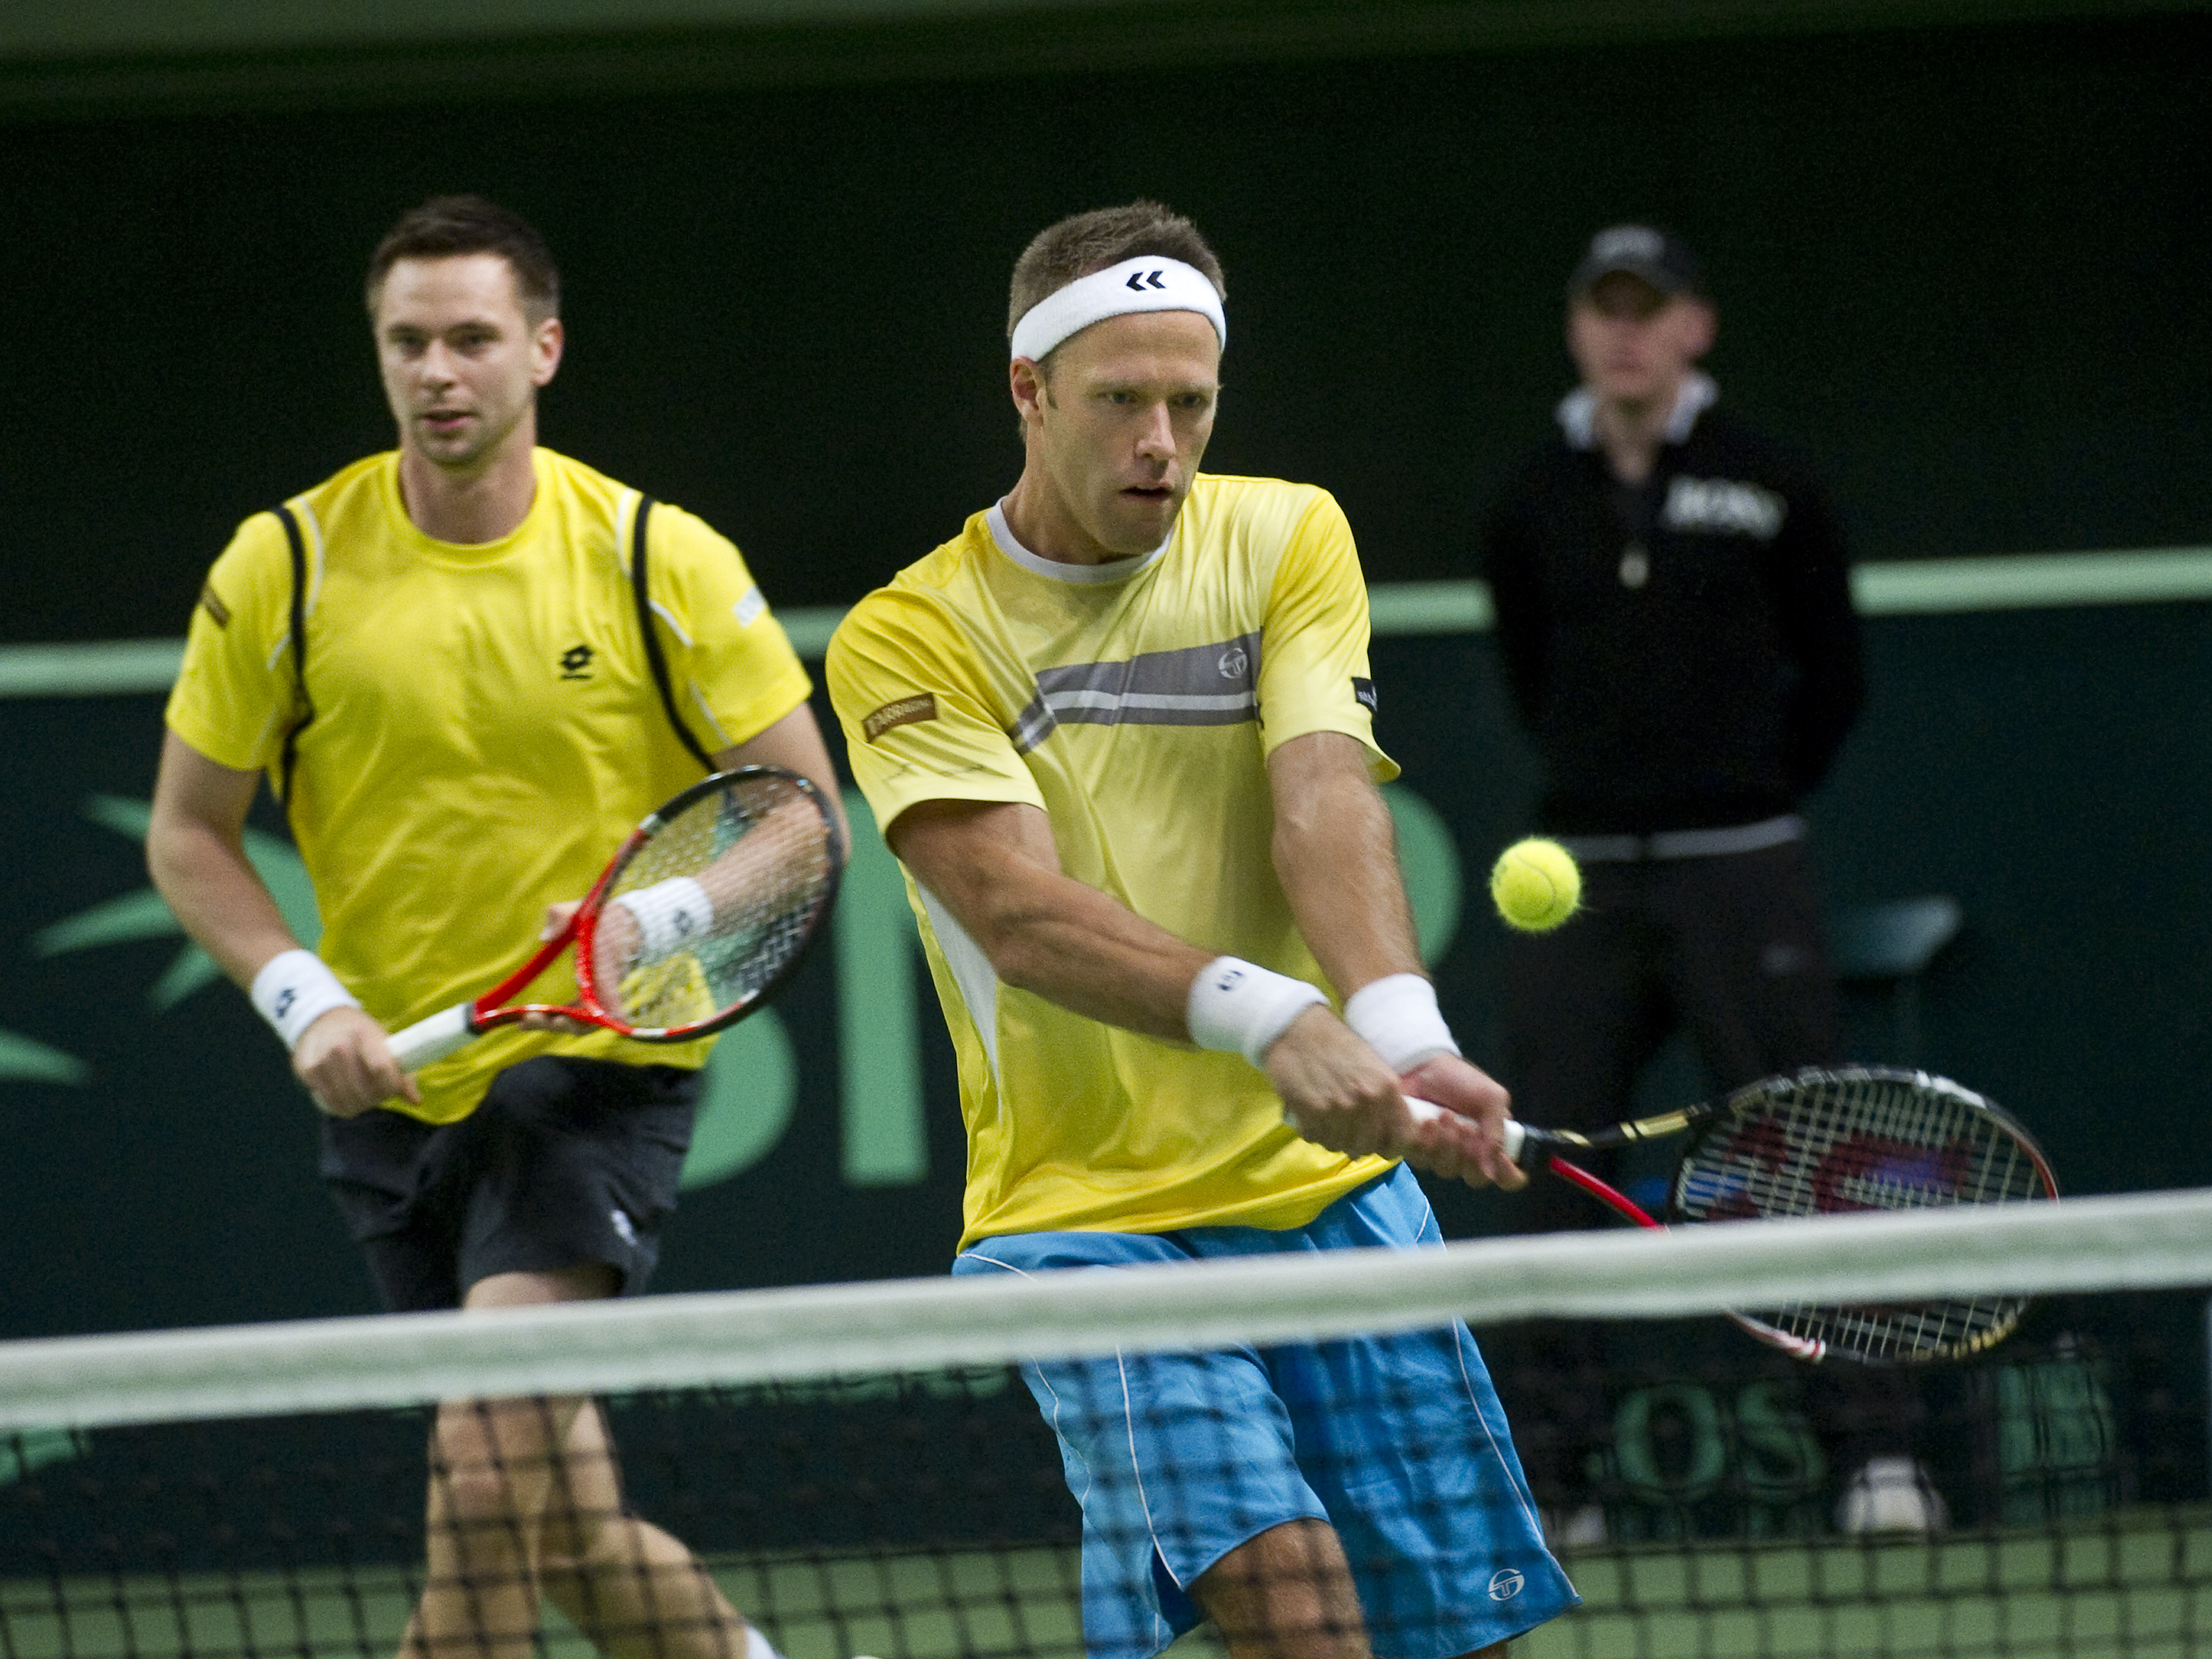 Tennis, Robin Soderling, Robert Lindstedt, Davis Cup, argentina, Sverige